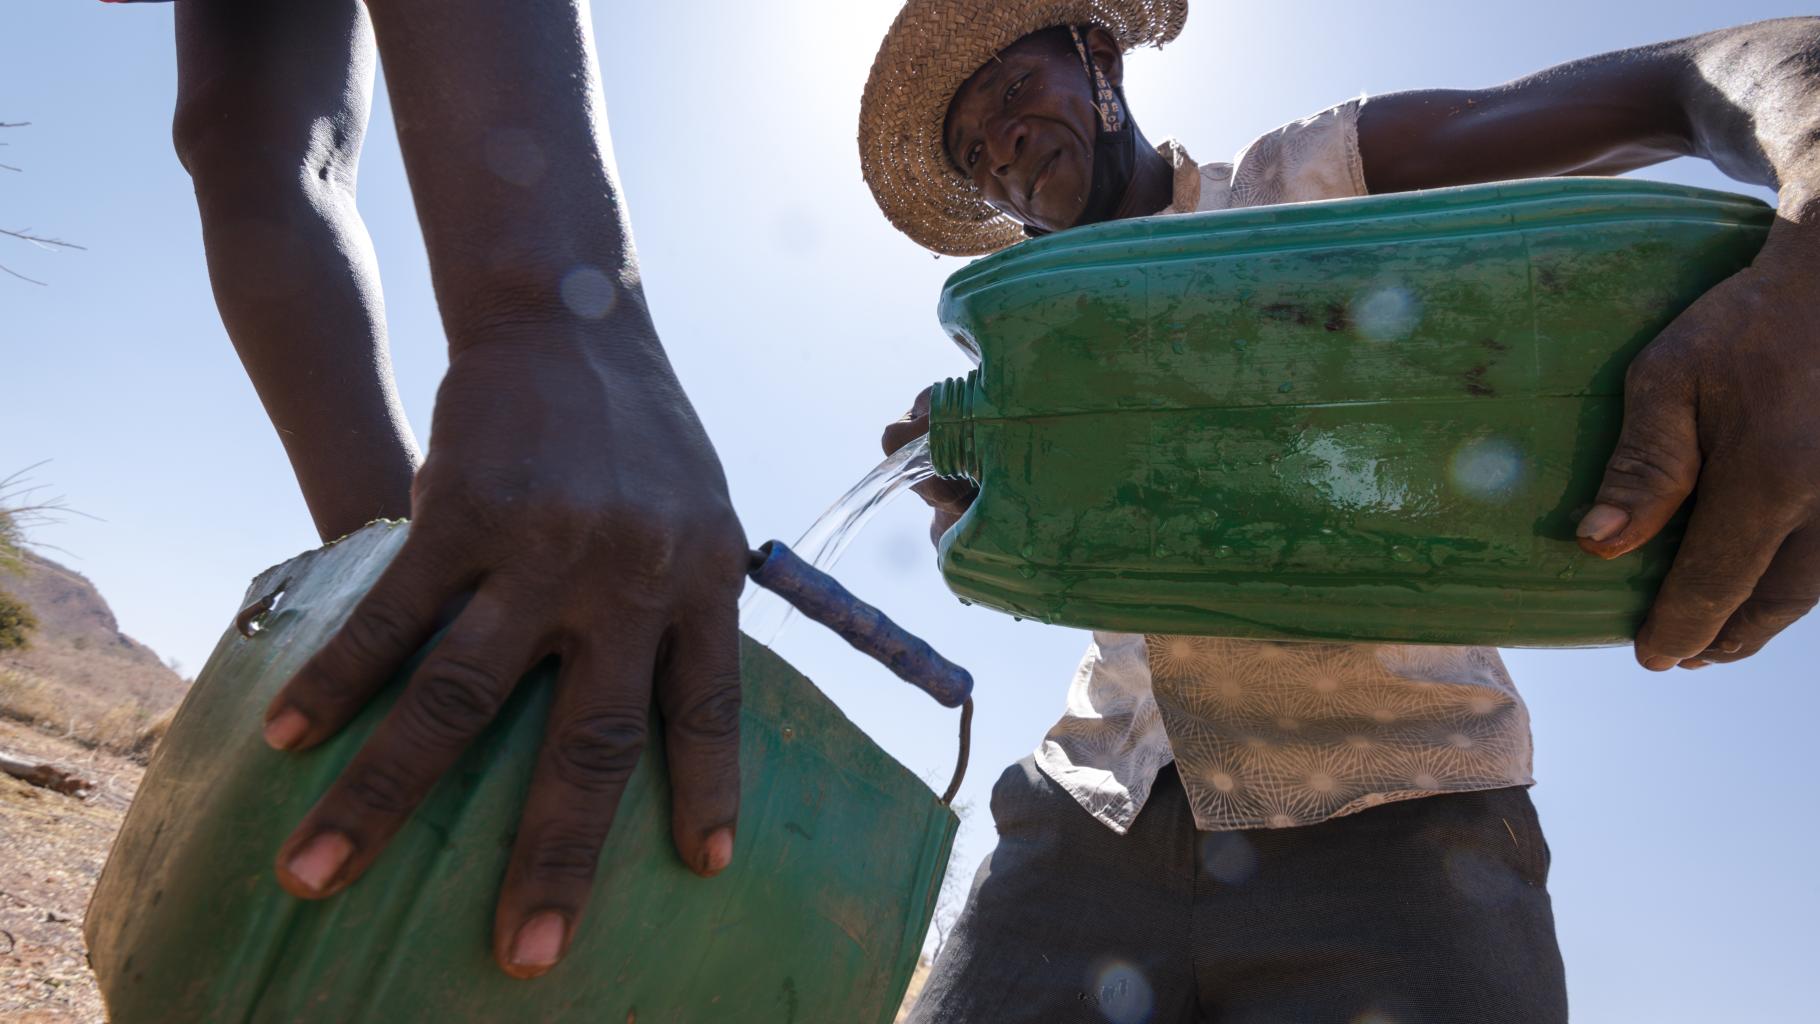 Samuel Sawadogo teilt Wasser auf zwei grüne Wasserkanister auf. Er trägt einen Hut zum Schutz vor der Sonne, ein beige-gemustertes Hemd und eine dunkle Hose. Man sieht links die Hände einer weiteren Person, die den zweiten Kanister hält.